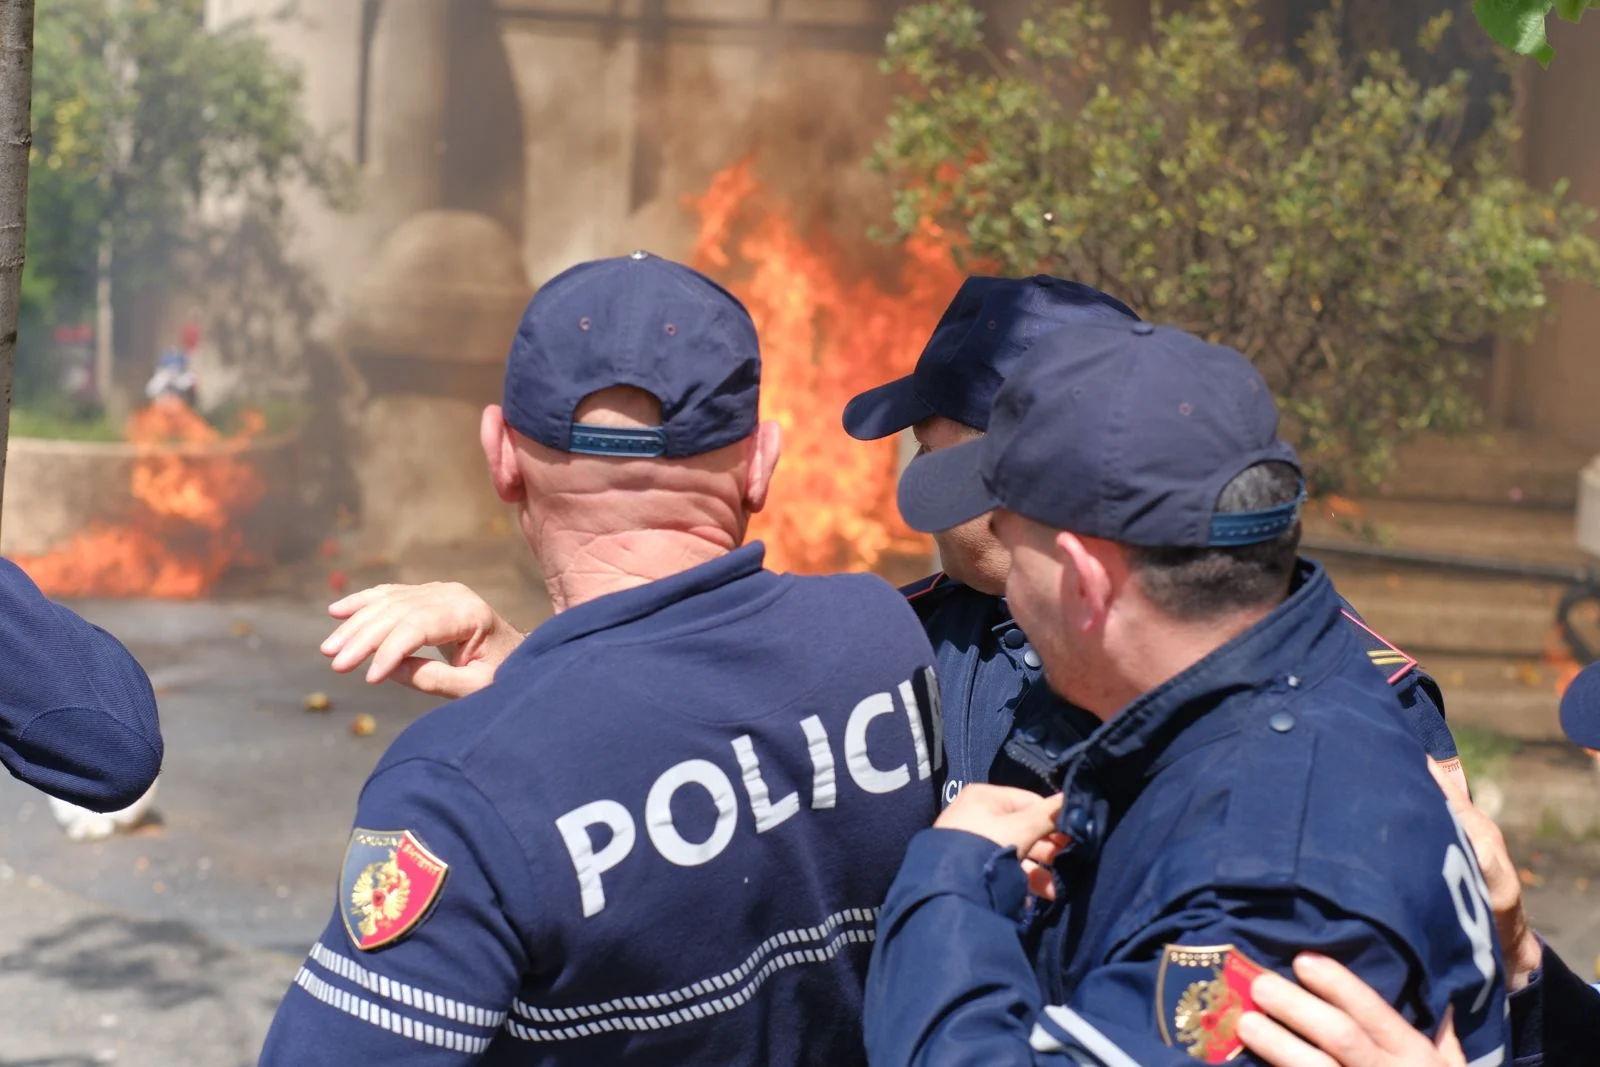 Tiranë: Protestuesit hedhin molotov drejt bashkisë, shkatërrojnë murin metalik të policisë